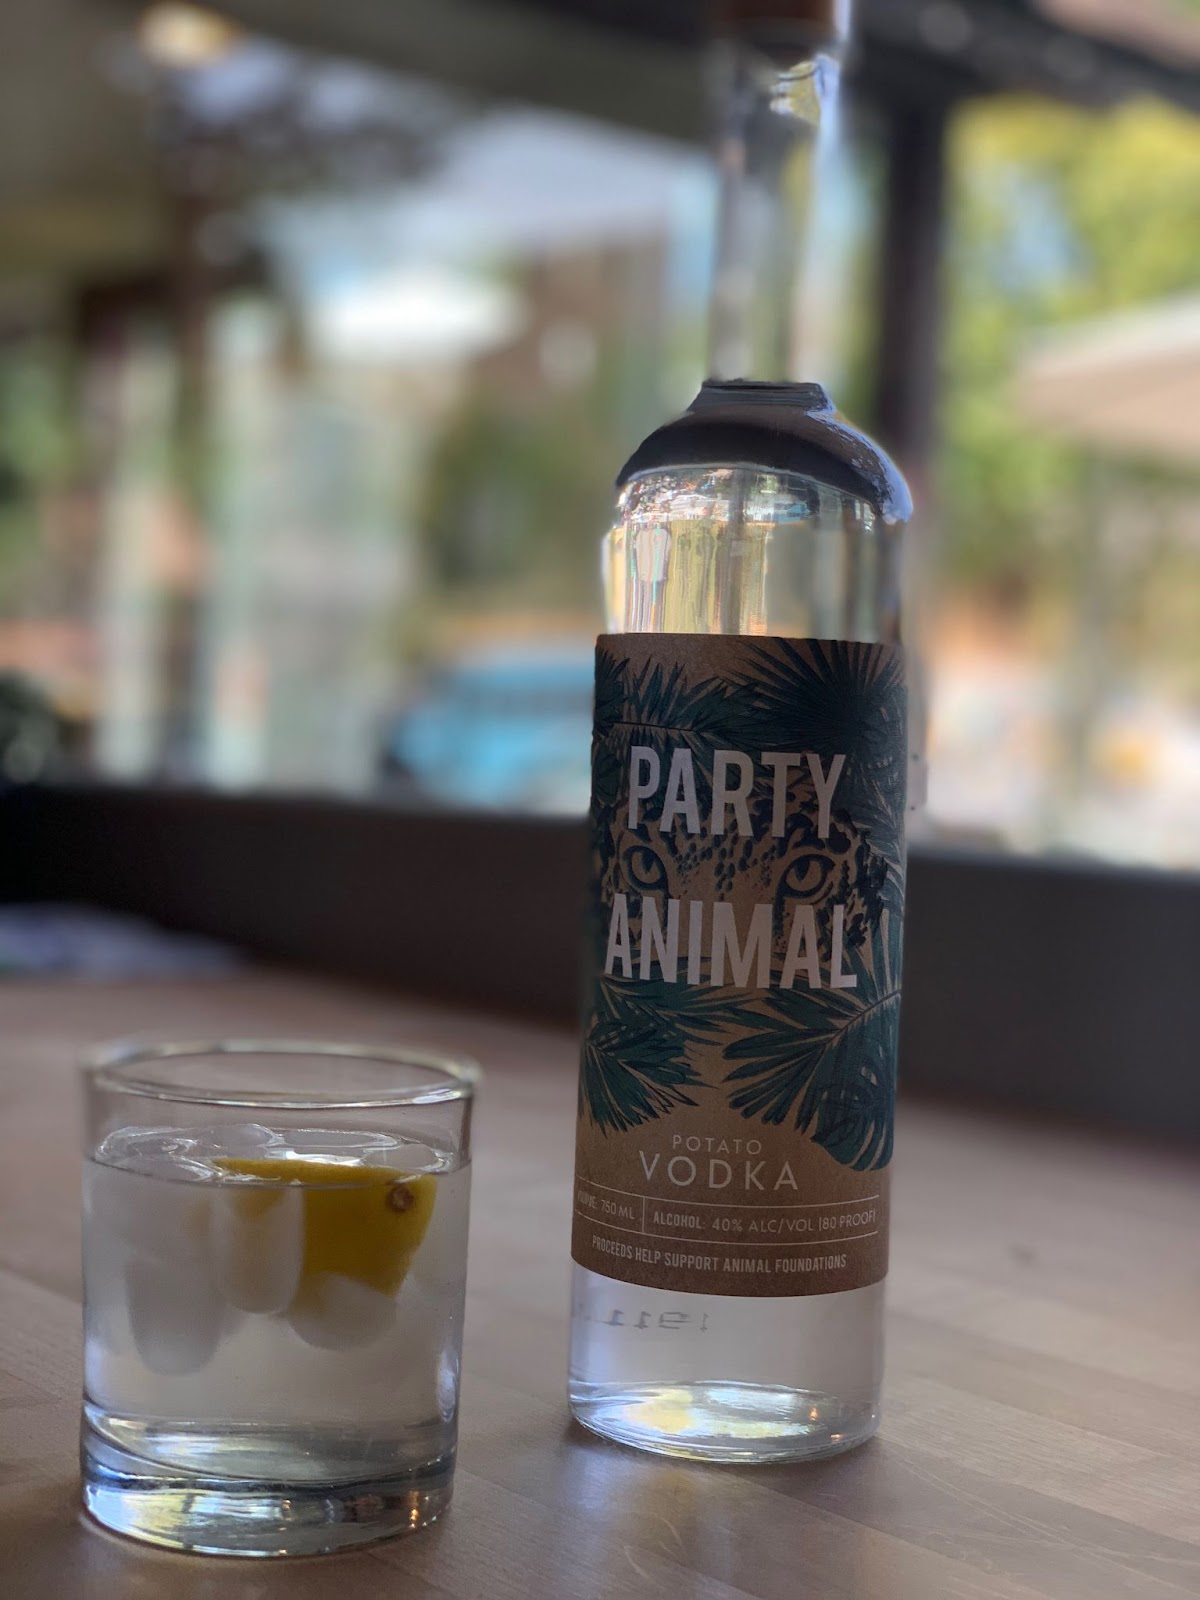 Party Animal Vodka, photo by Hayden Seder